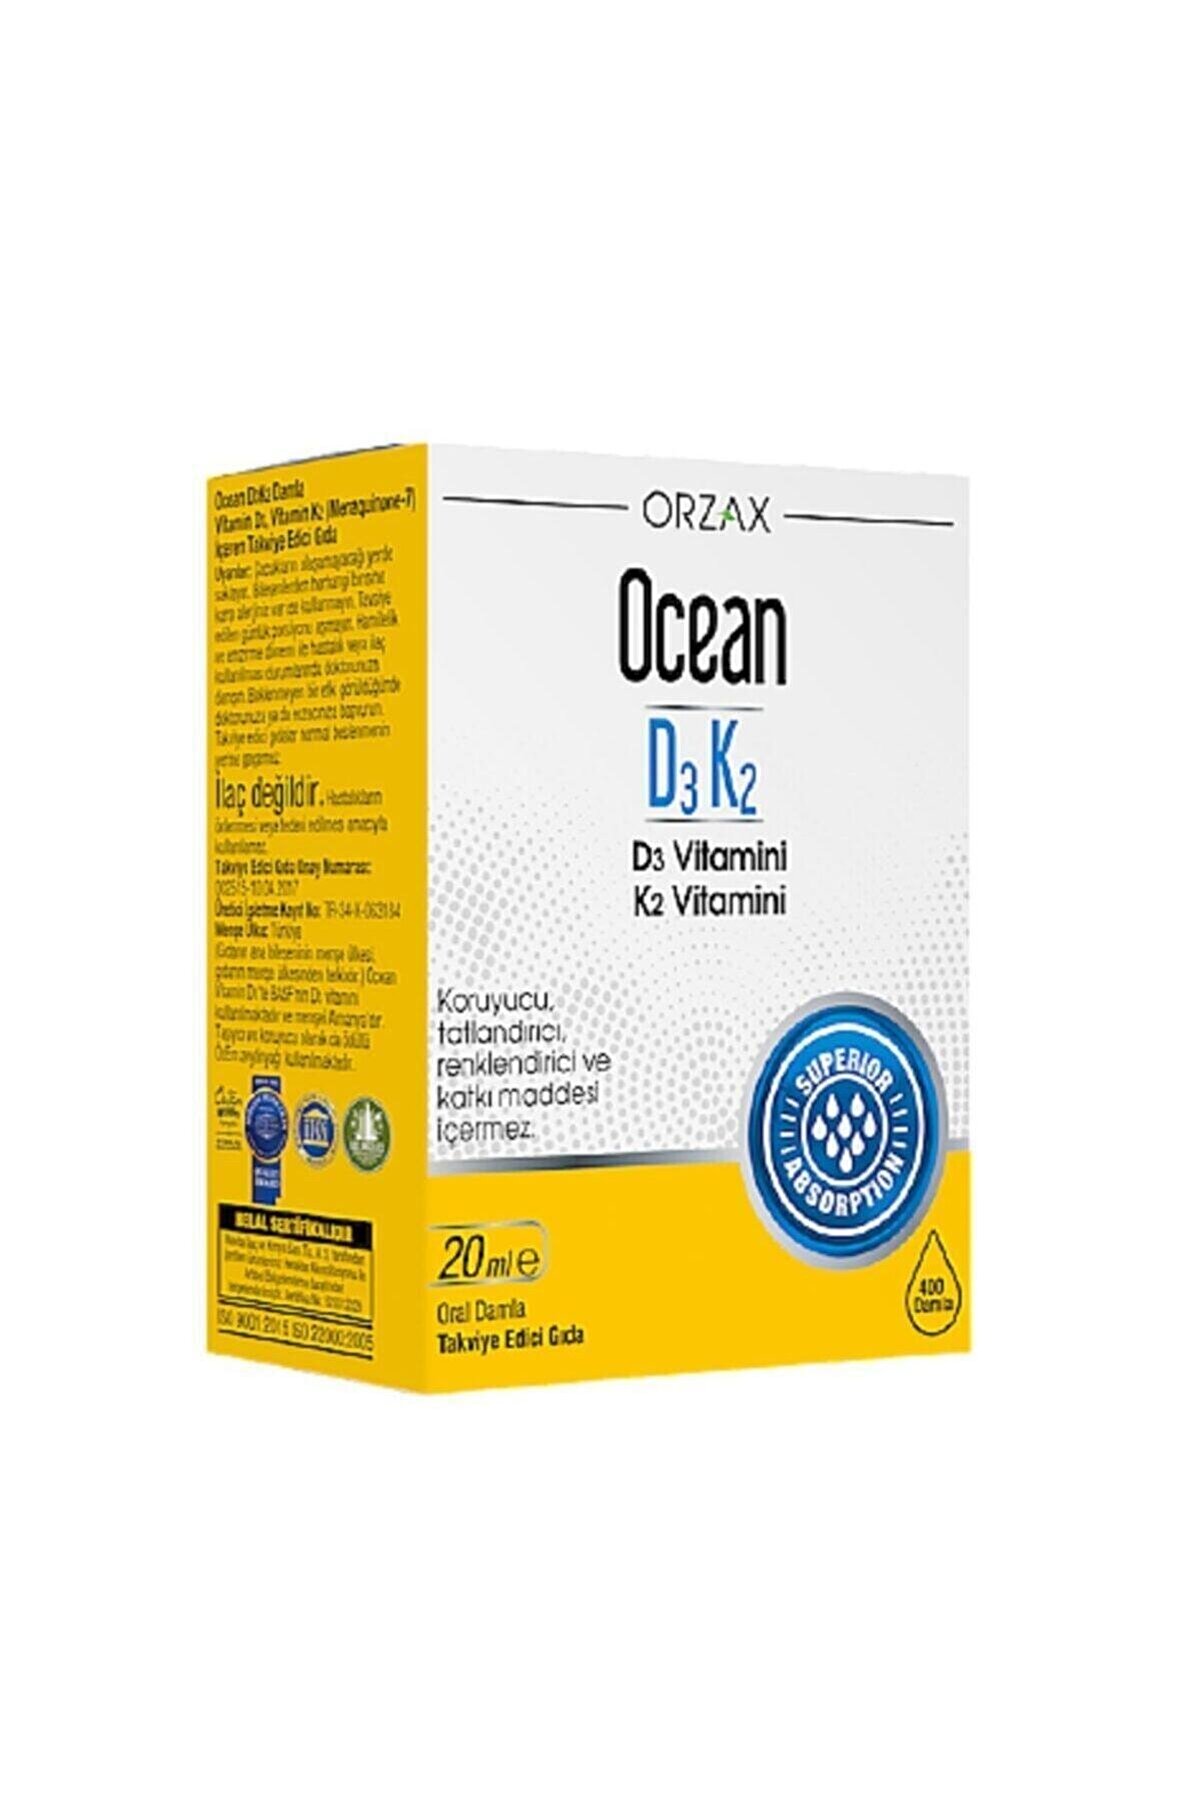 Ocean Ocean D3 K2 Vitamini